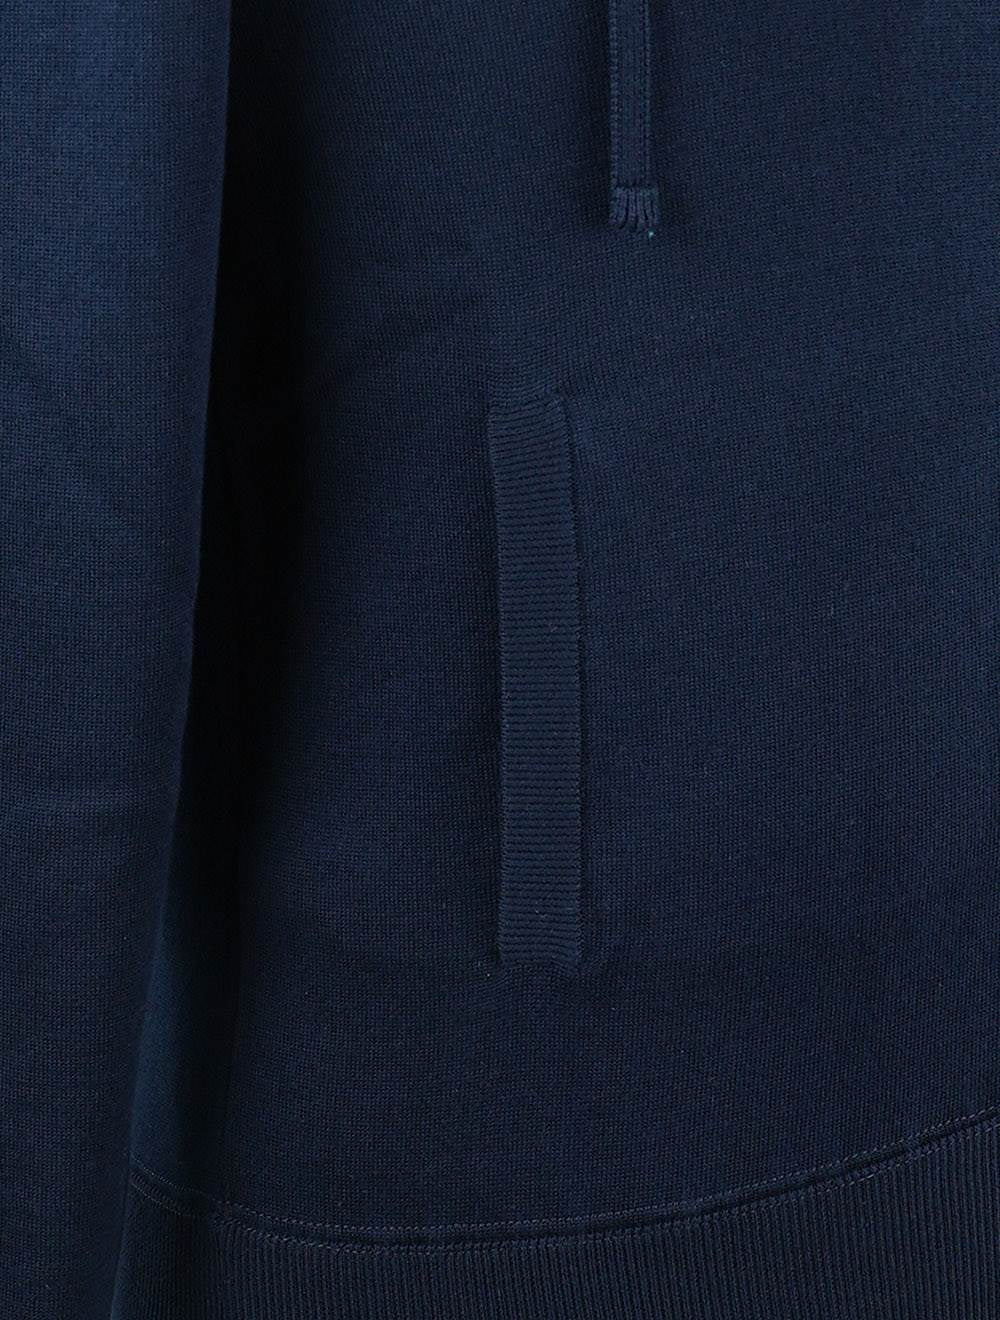 Kiton blauer Baumwoll pullover mit Reiß verschluss